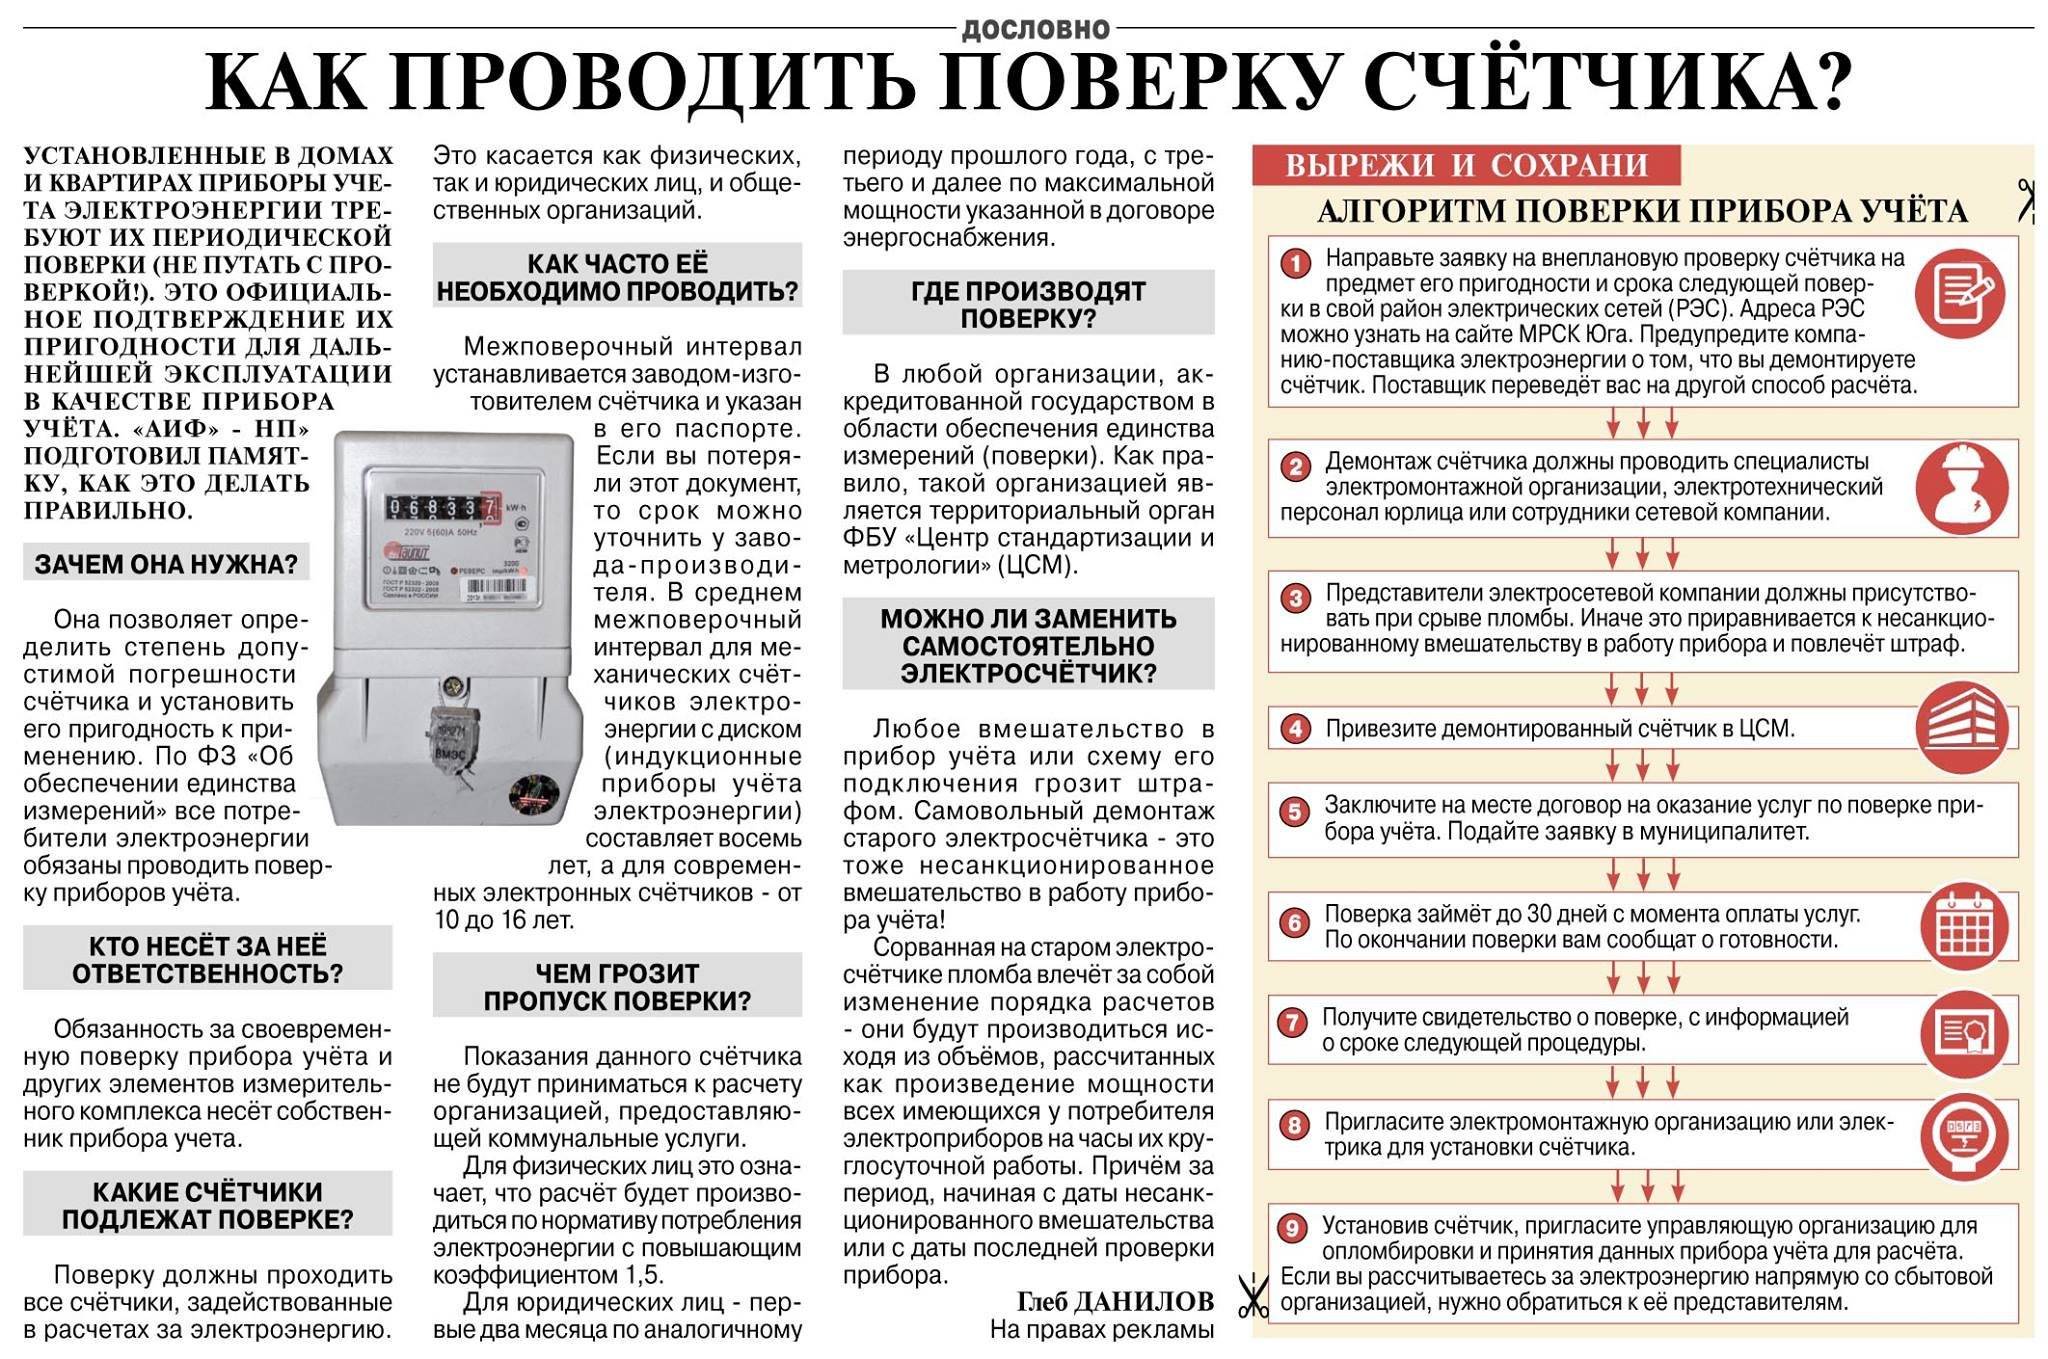 Межповерочный интервал (мпи) электросчетчиков - таблица сроков поверки счетчиков электроэнергии в россии по моделям